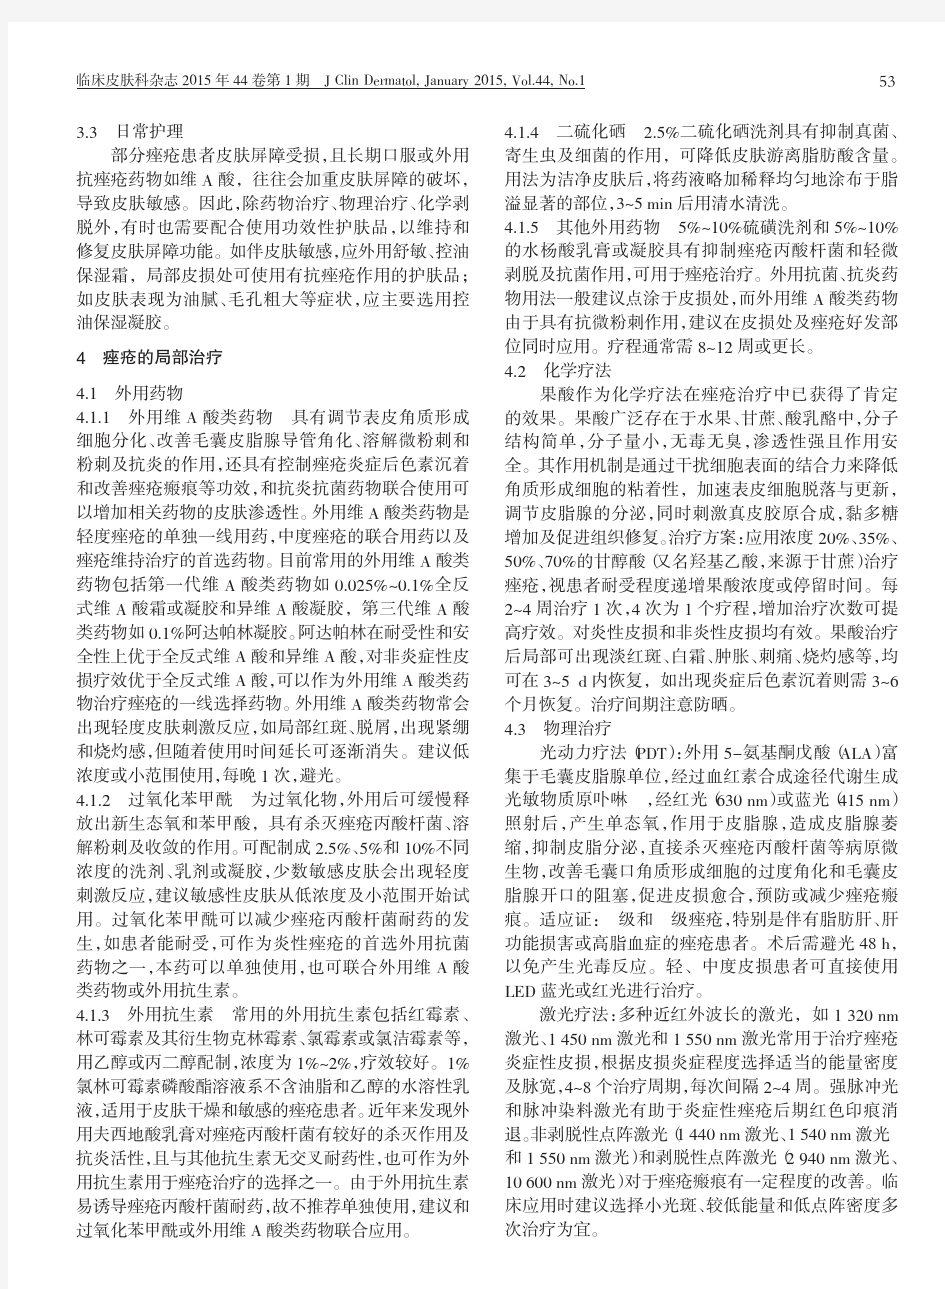 中国痤疮治疗指南_2014修订版_项蕾红